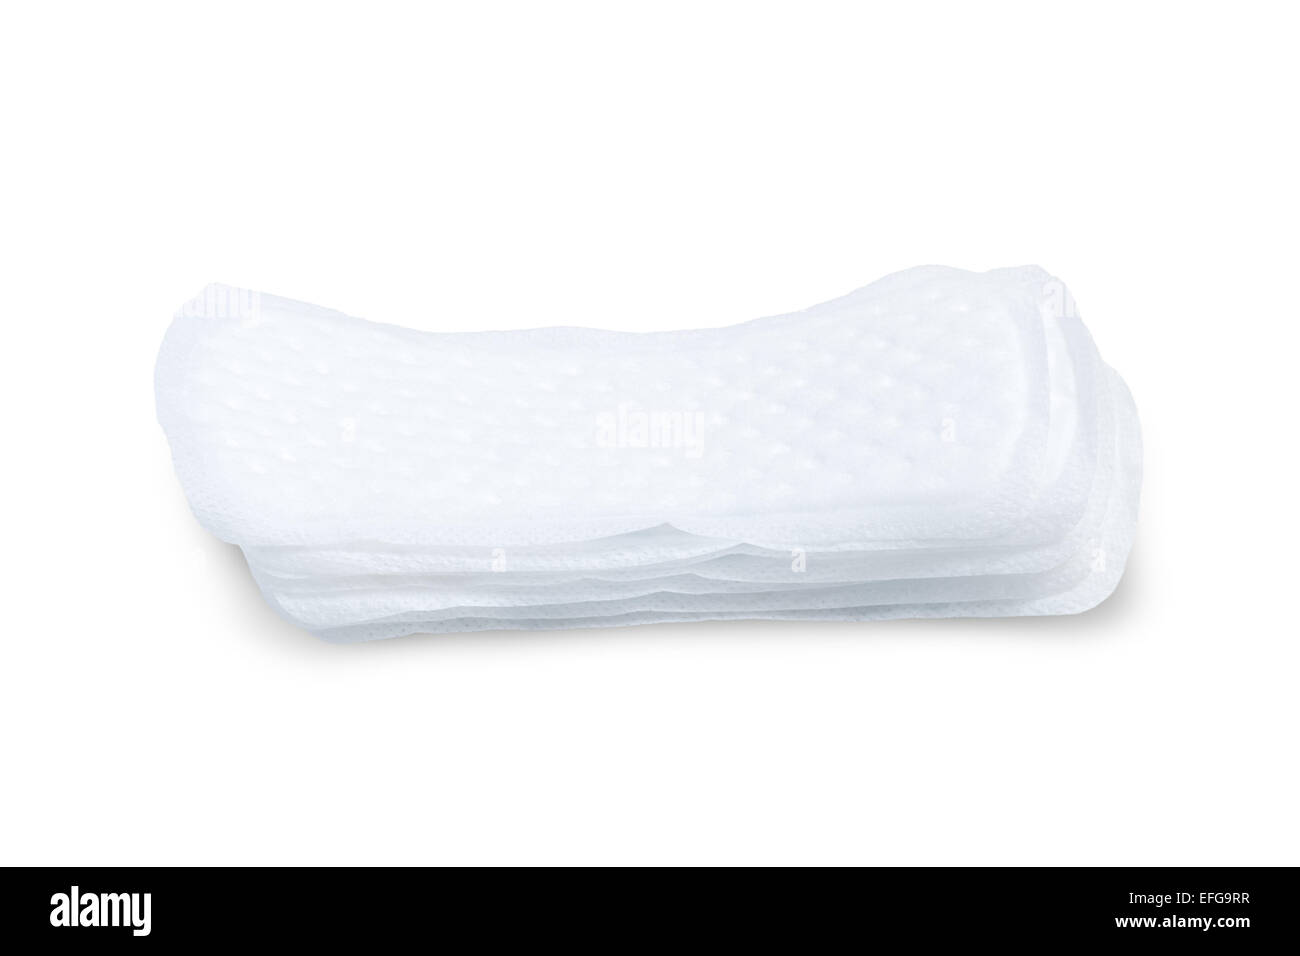 Stapel von Damenbinden (oder Handtücher oder Pads) isoliert auf weißem Hintergrund Stockfoto